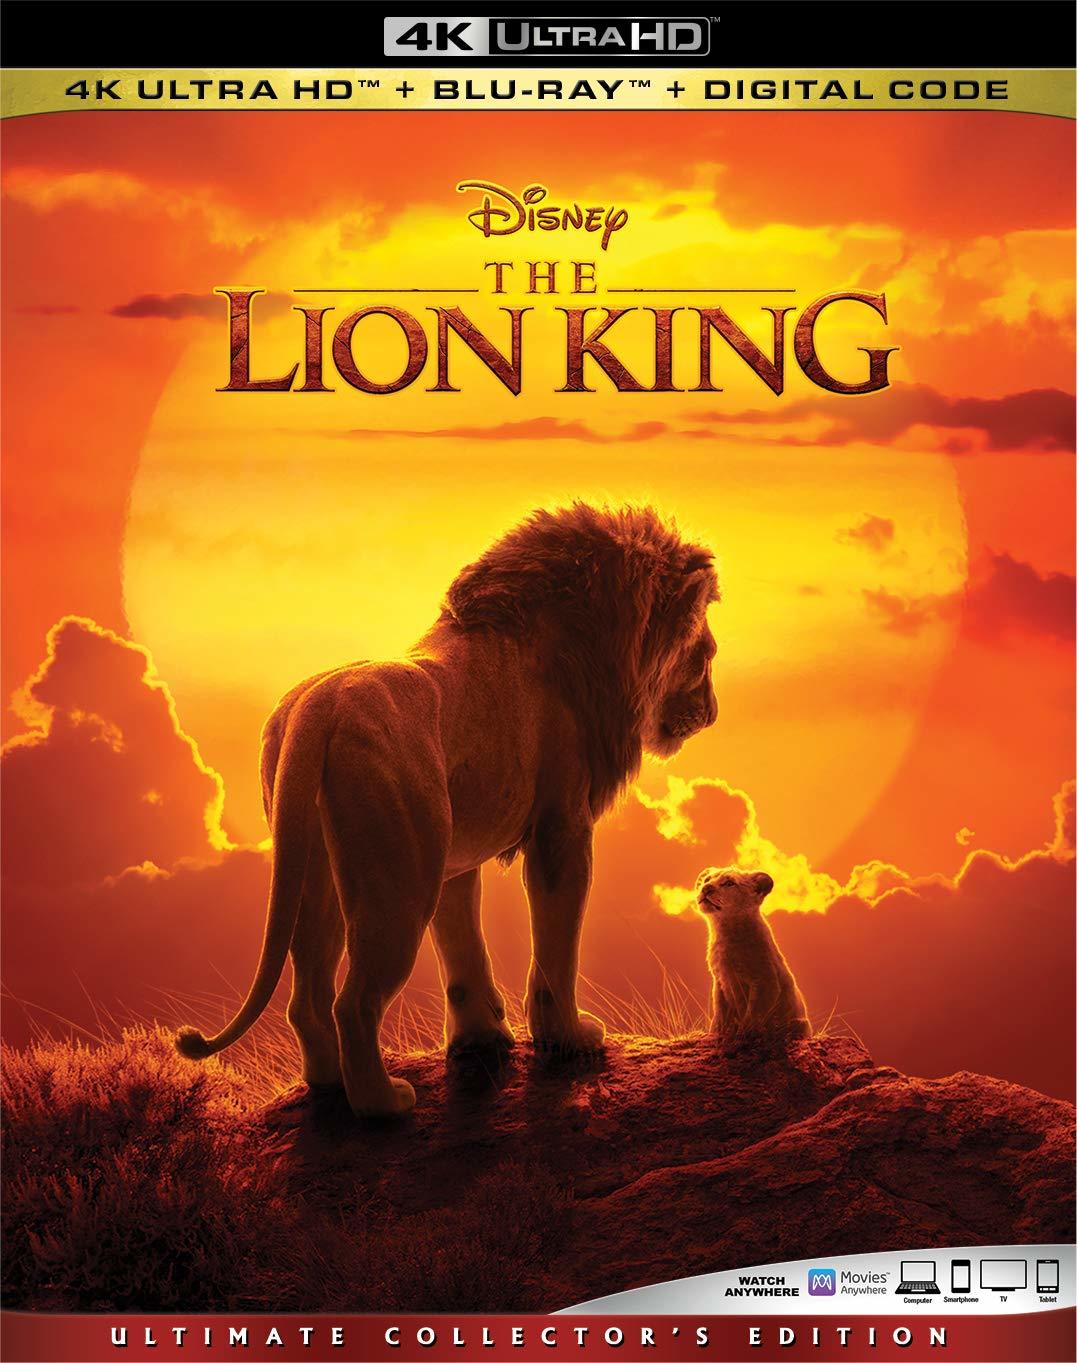 狮子王 / 狮子王真人版 / 狮子王真实版【4K原盘DIY台配国语/粤语 简繁/双语特效字幕】 The Lion King 2019 2160p UHD Blu-ray HEVC TrueHD Atmos 7.1-Thor@HDSky    [57.57 GB ]-1.jpg